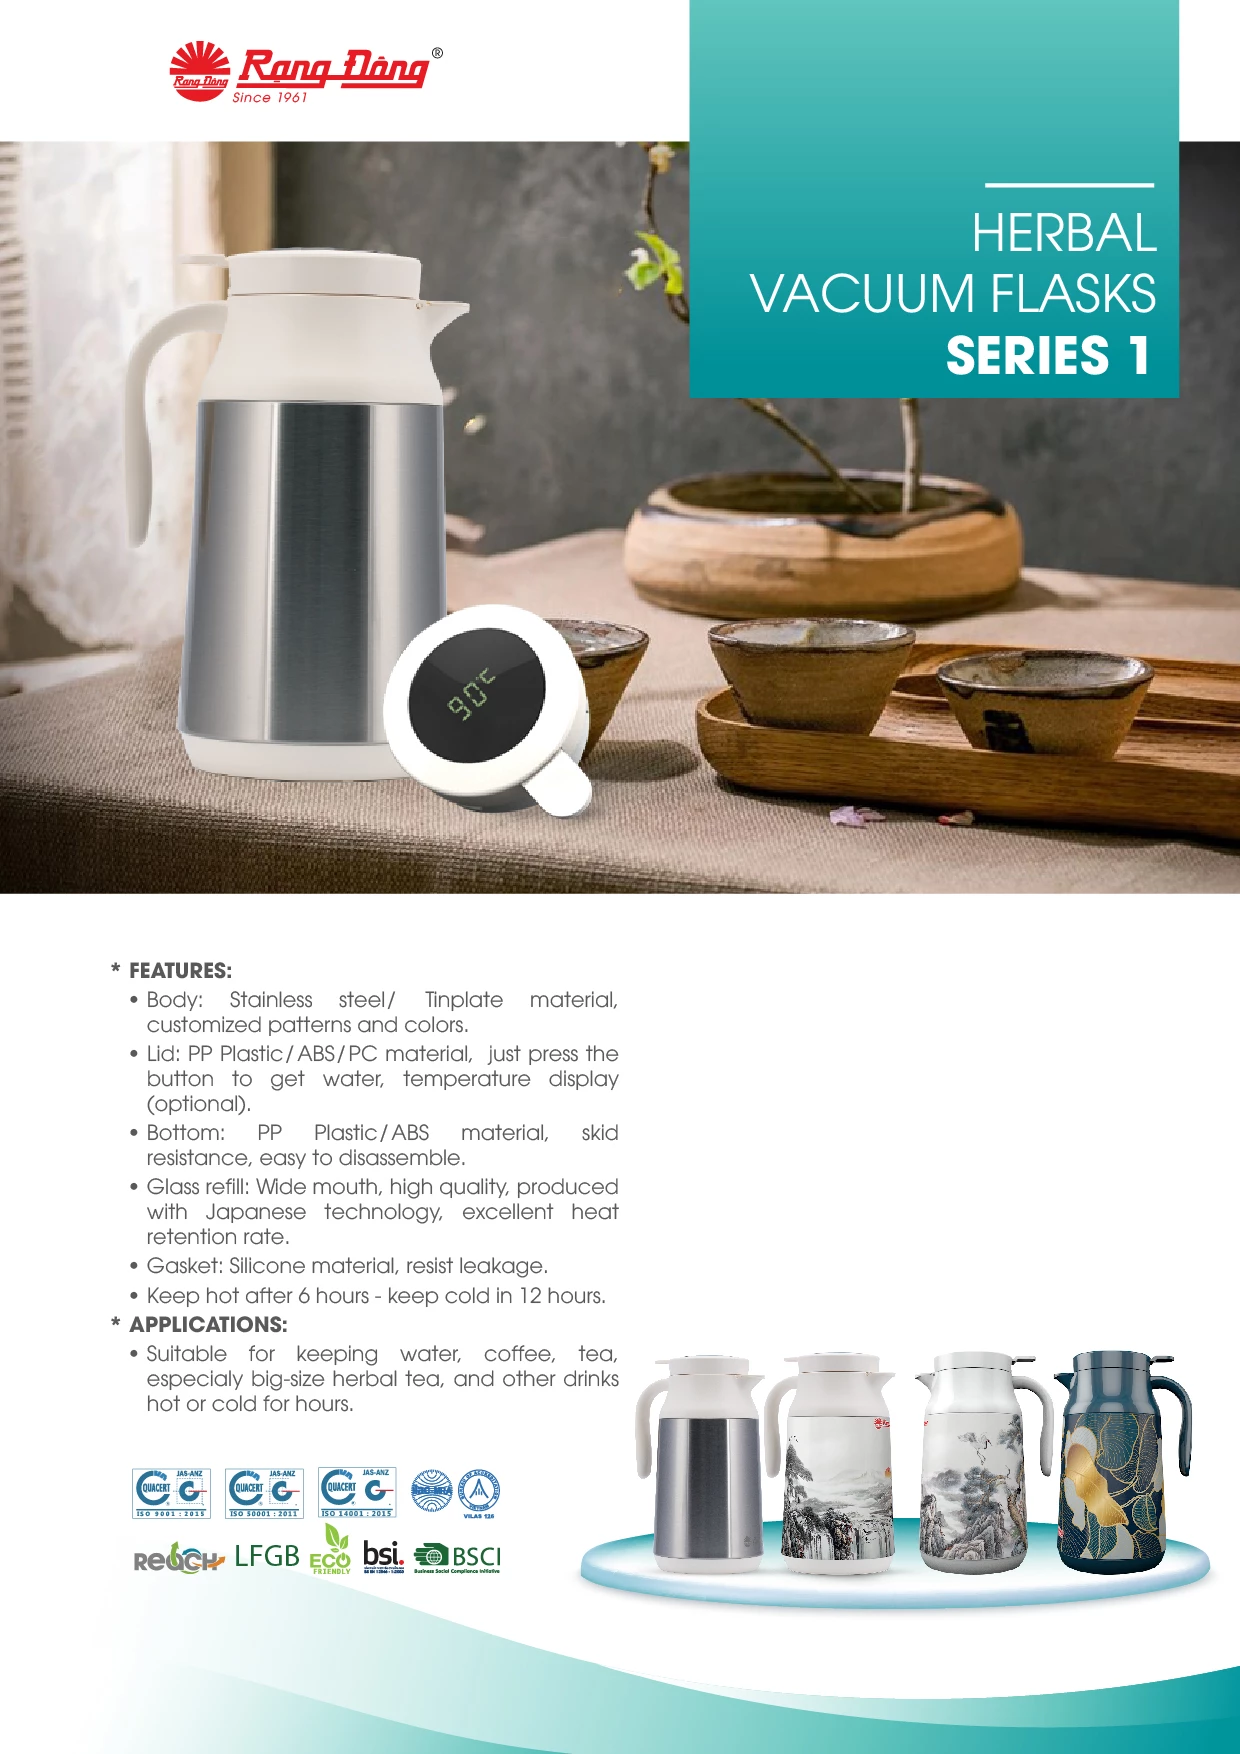 Herbal Vacuum Flasks Series 1